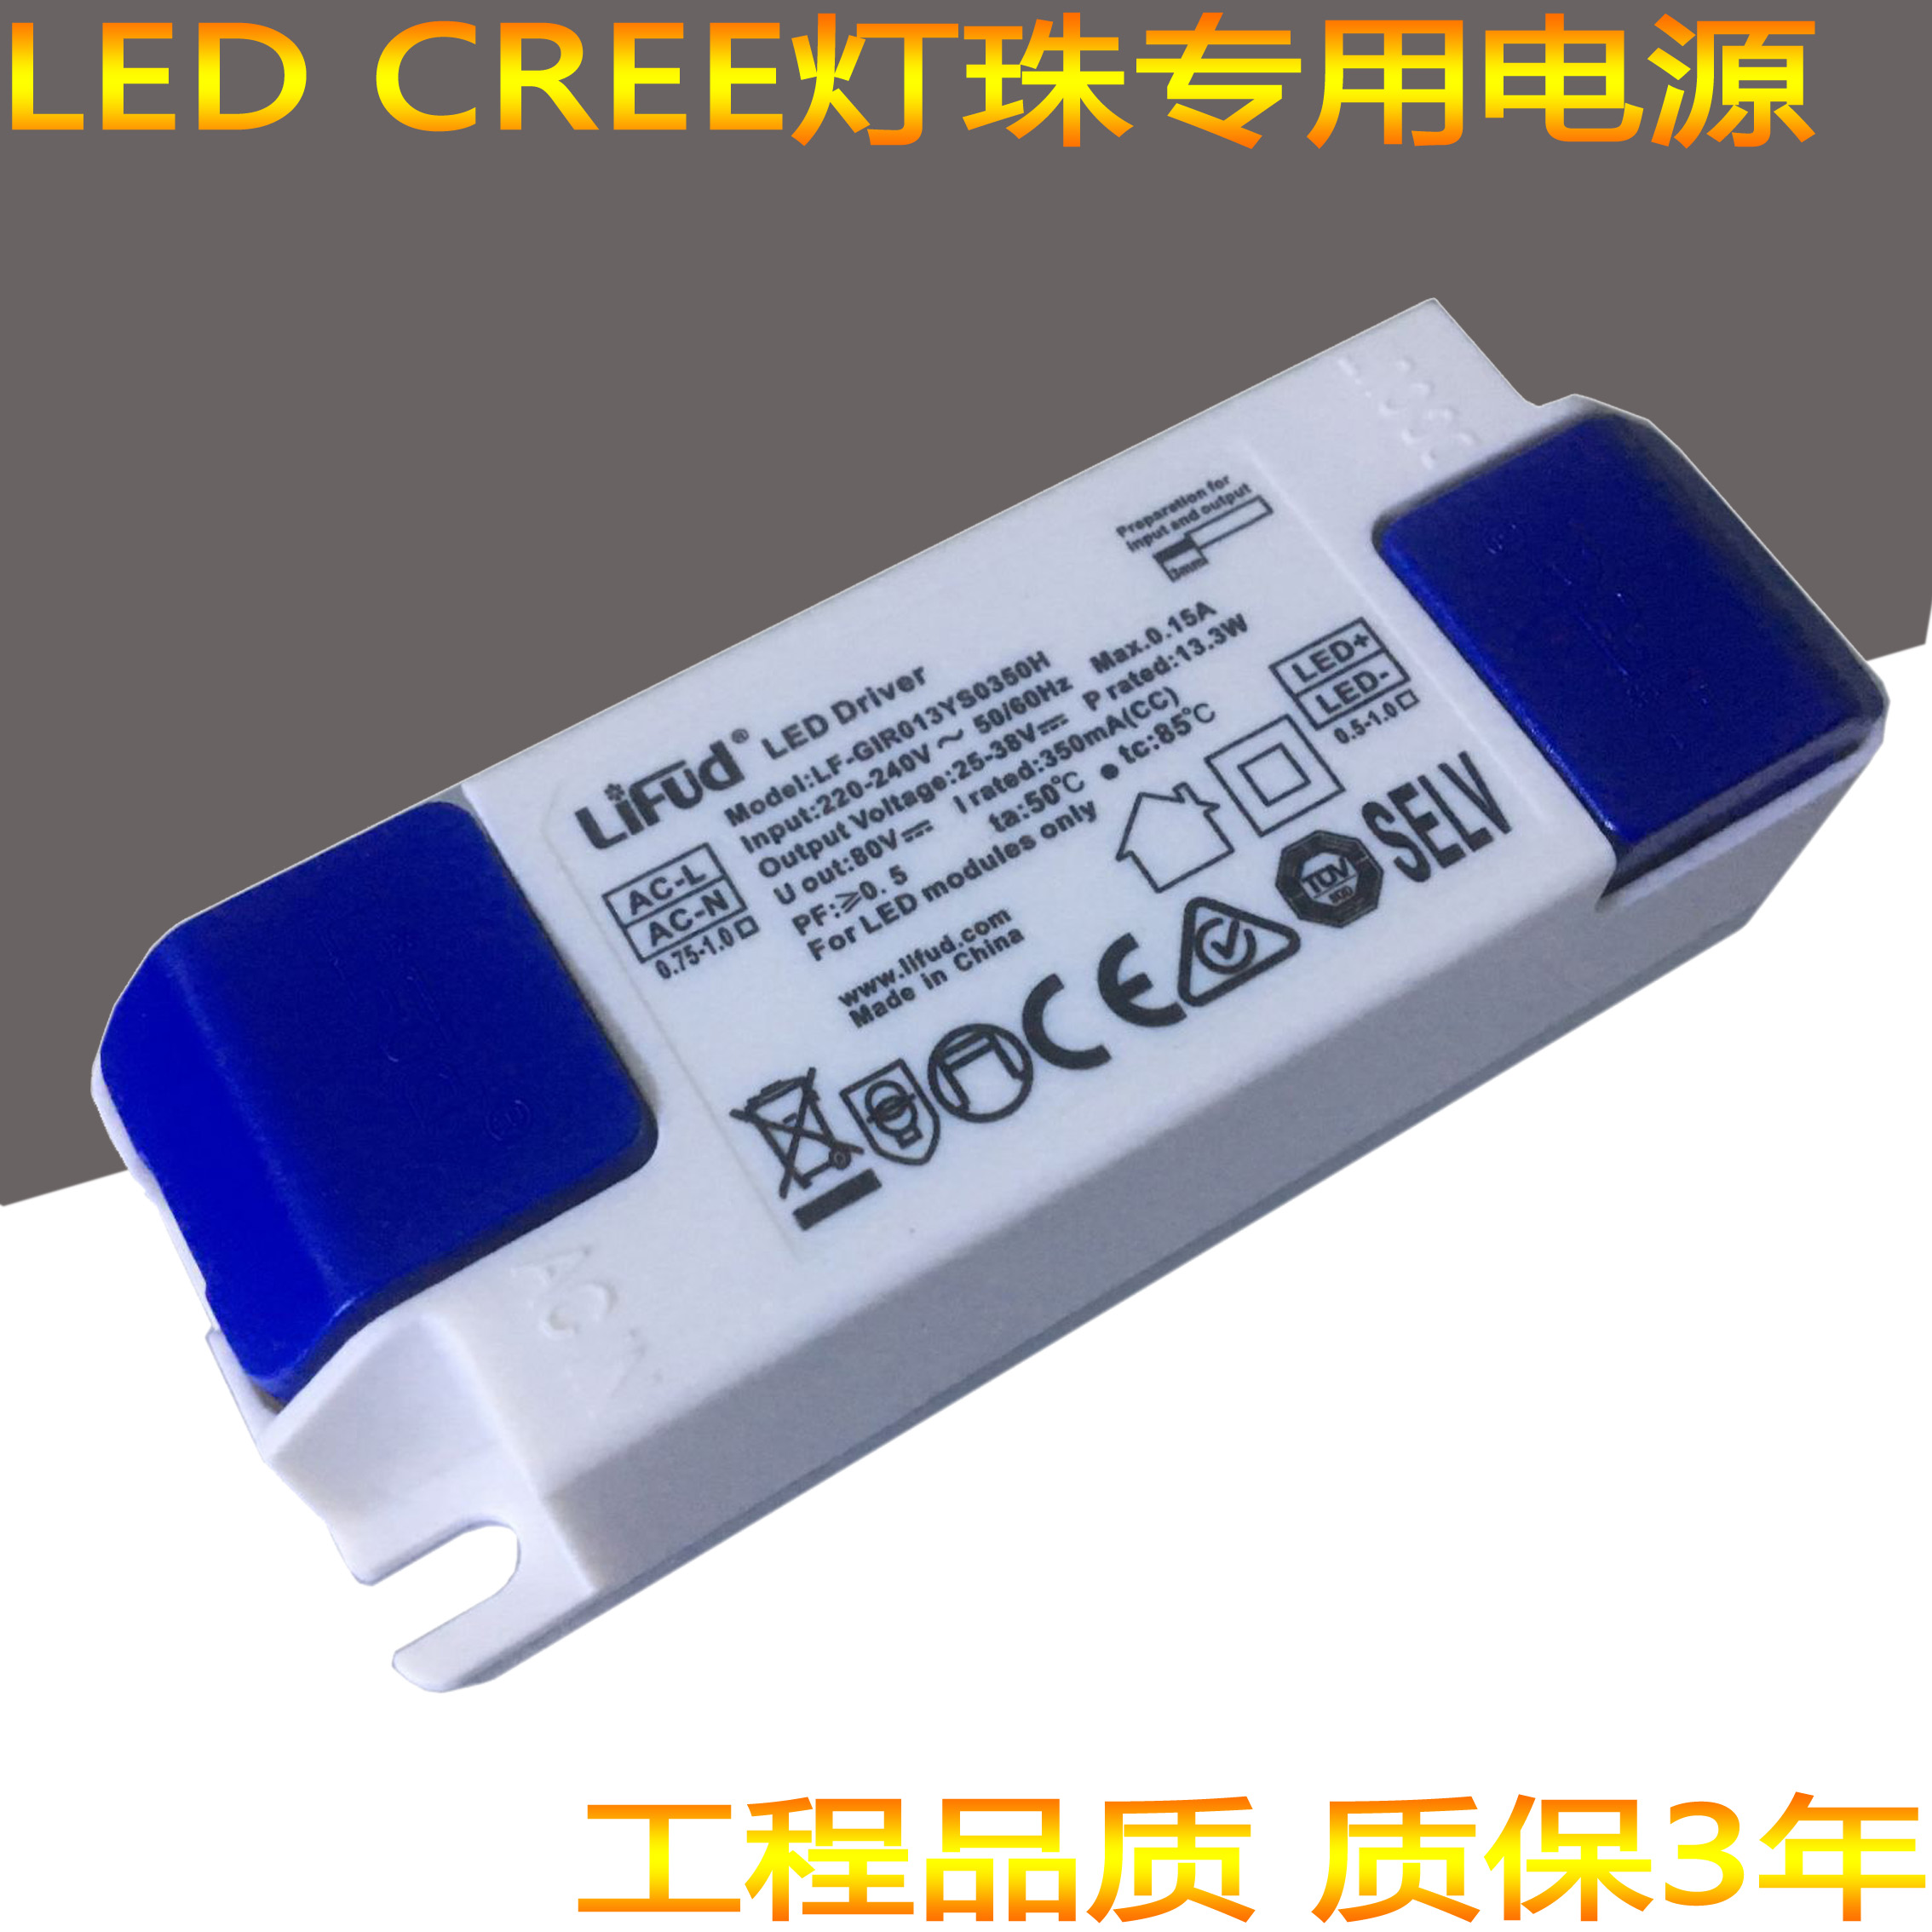 lifud莱福德驱动器LED射灯电源筒灯无频闪镇流器CREE芯片控制器